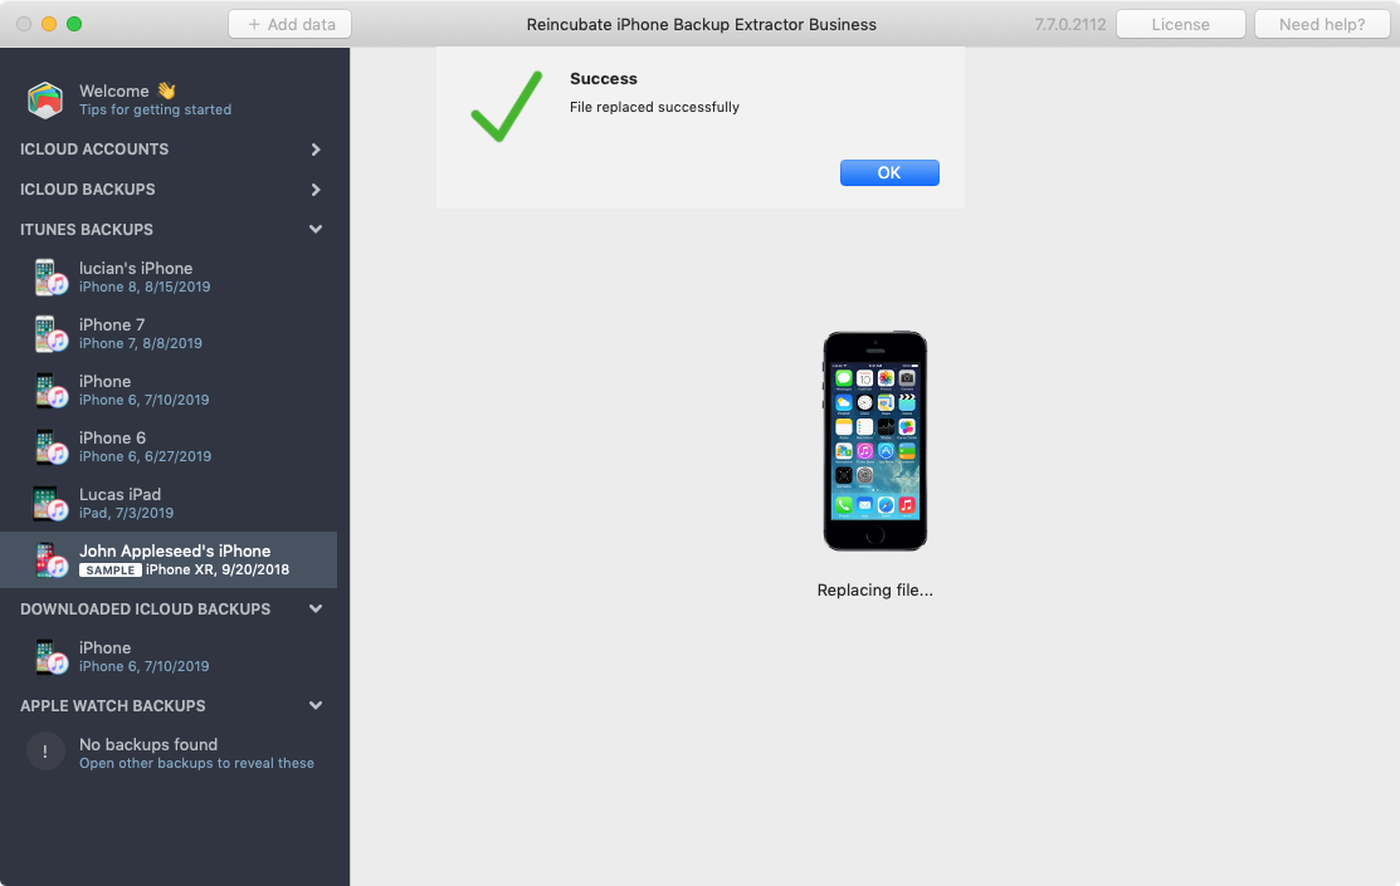 iOS: como transferir jogos salvos de um iPhone para um iPad novo - TecMundo